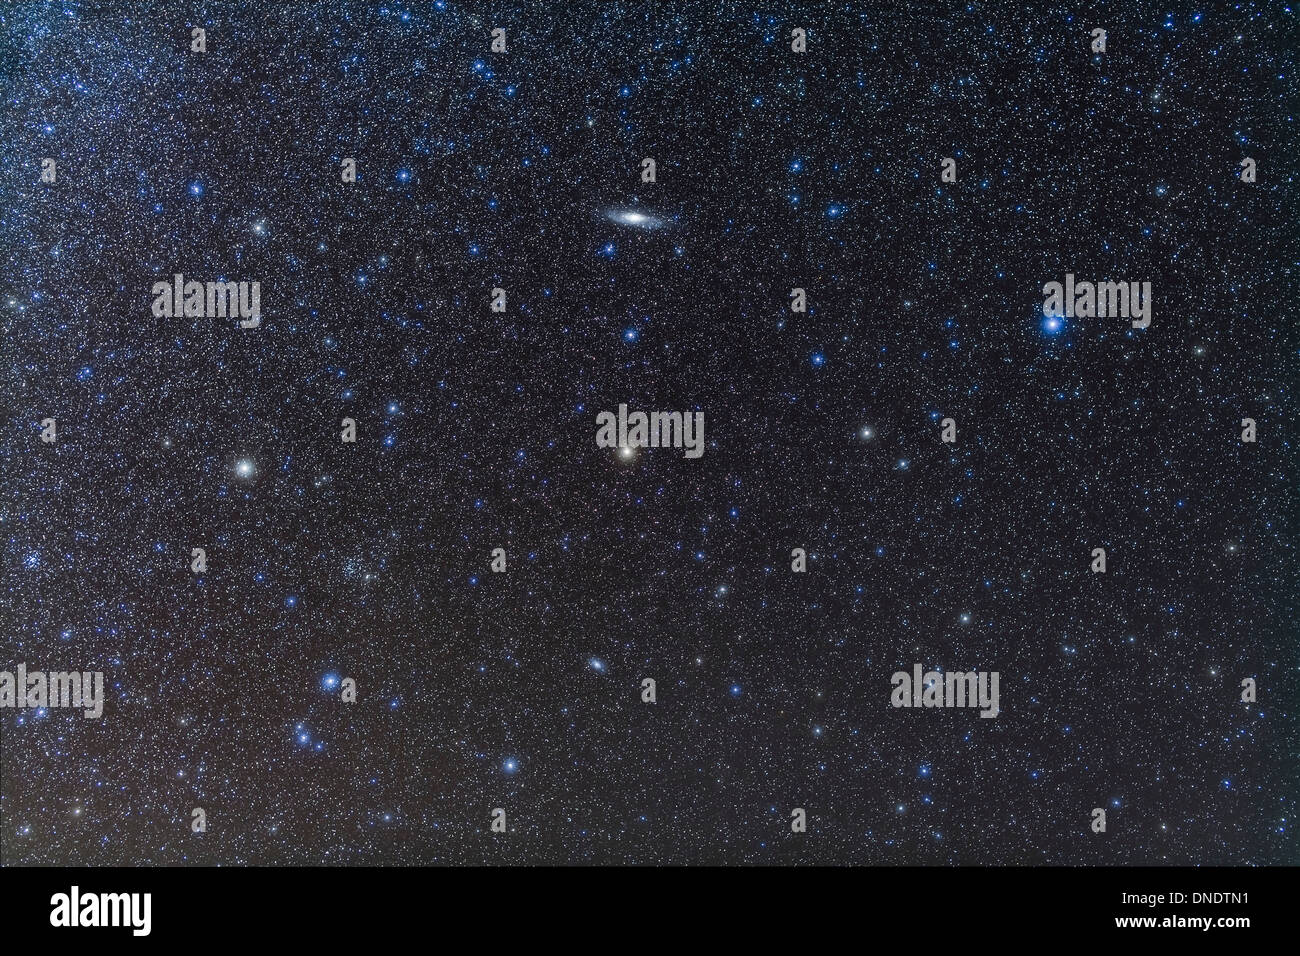 La galaxia Andrómeda y Triangulum galaxia con racimos de estrellas. Foto de stock